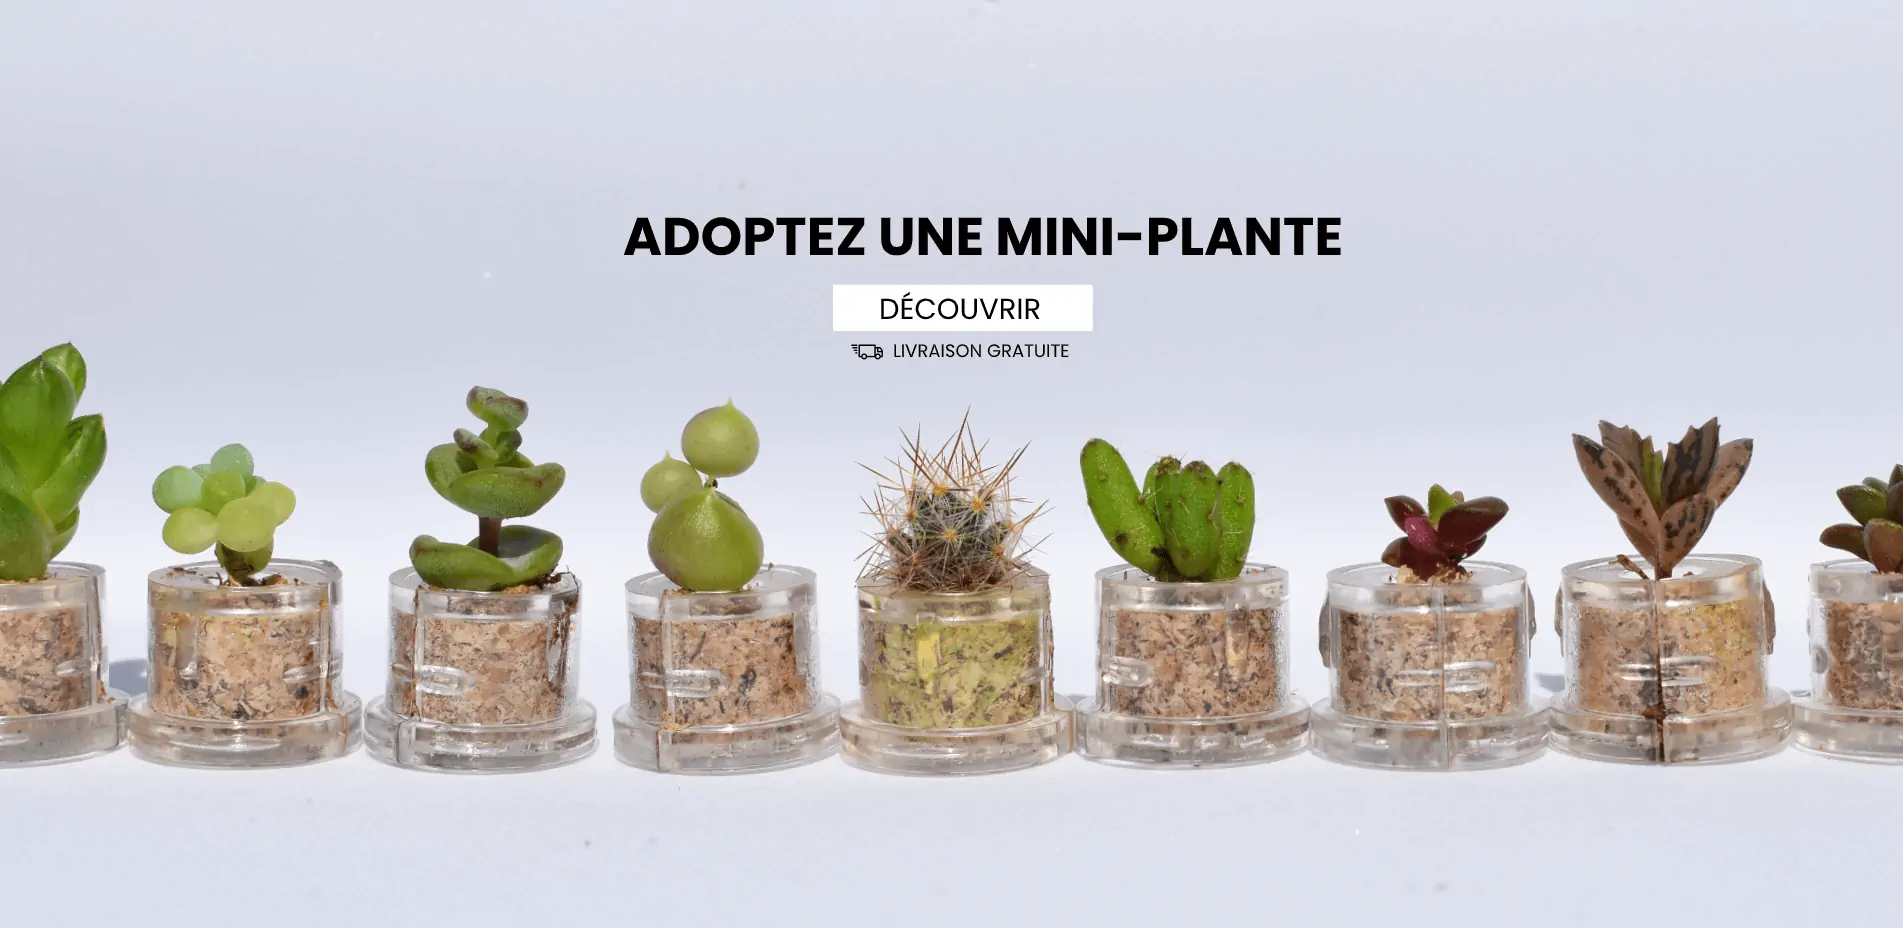 Adoptez un minicactus, la mini plante de poche